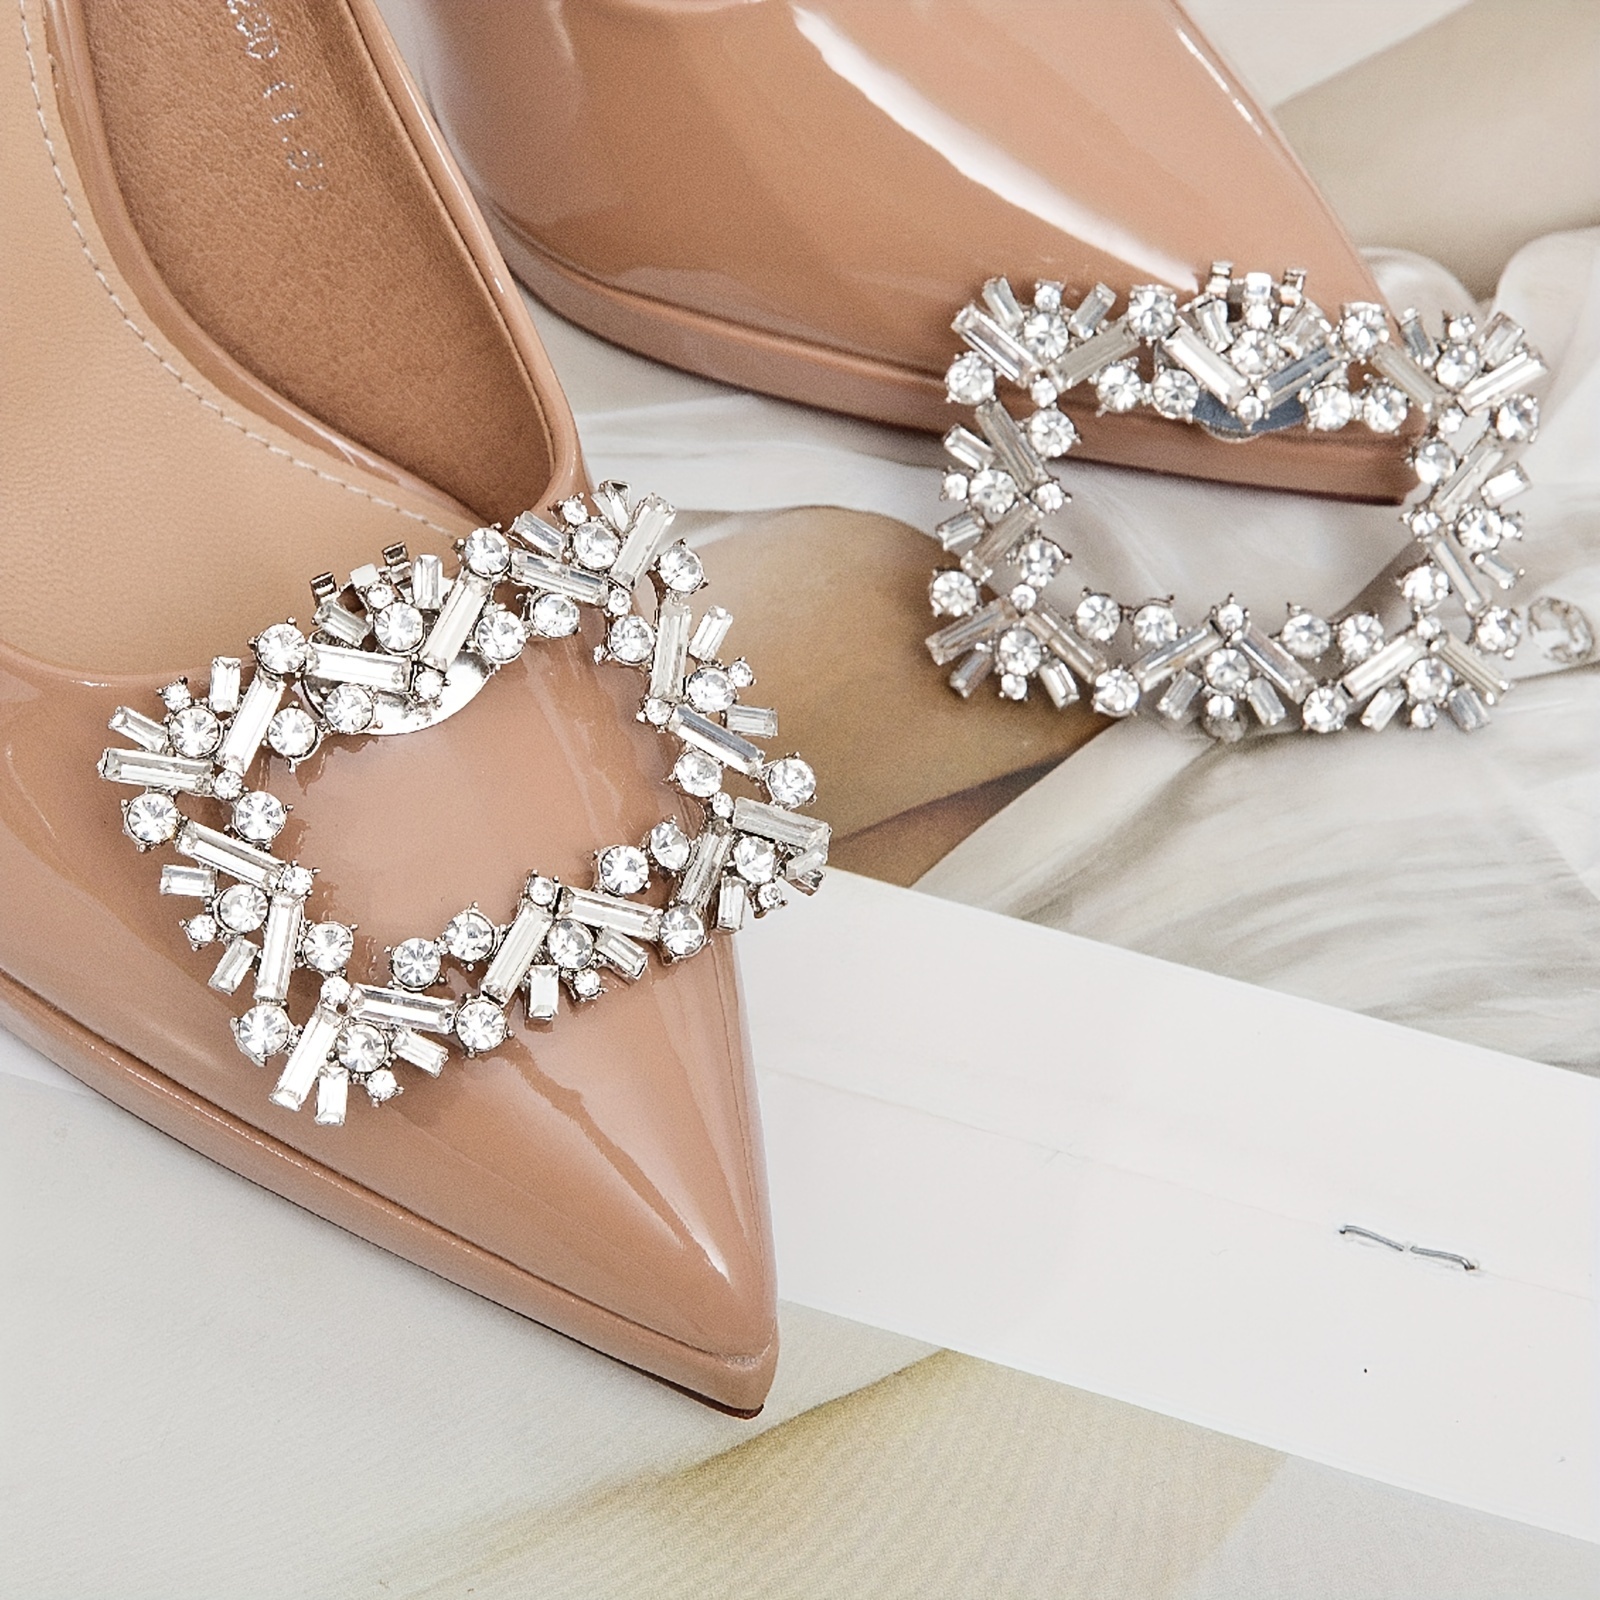 1 Pair Decorative Shoe Clips PU Leather Bow Shoe Flower Detachable Shoe  Decoration for Flats Pumps